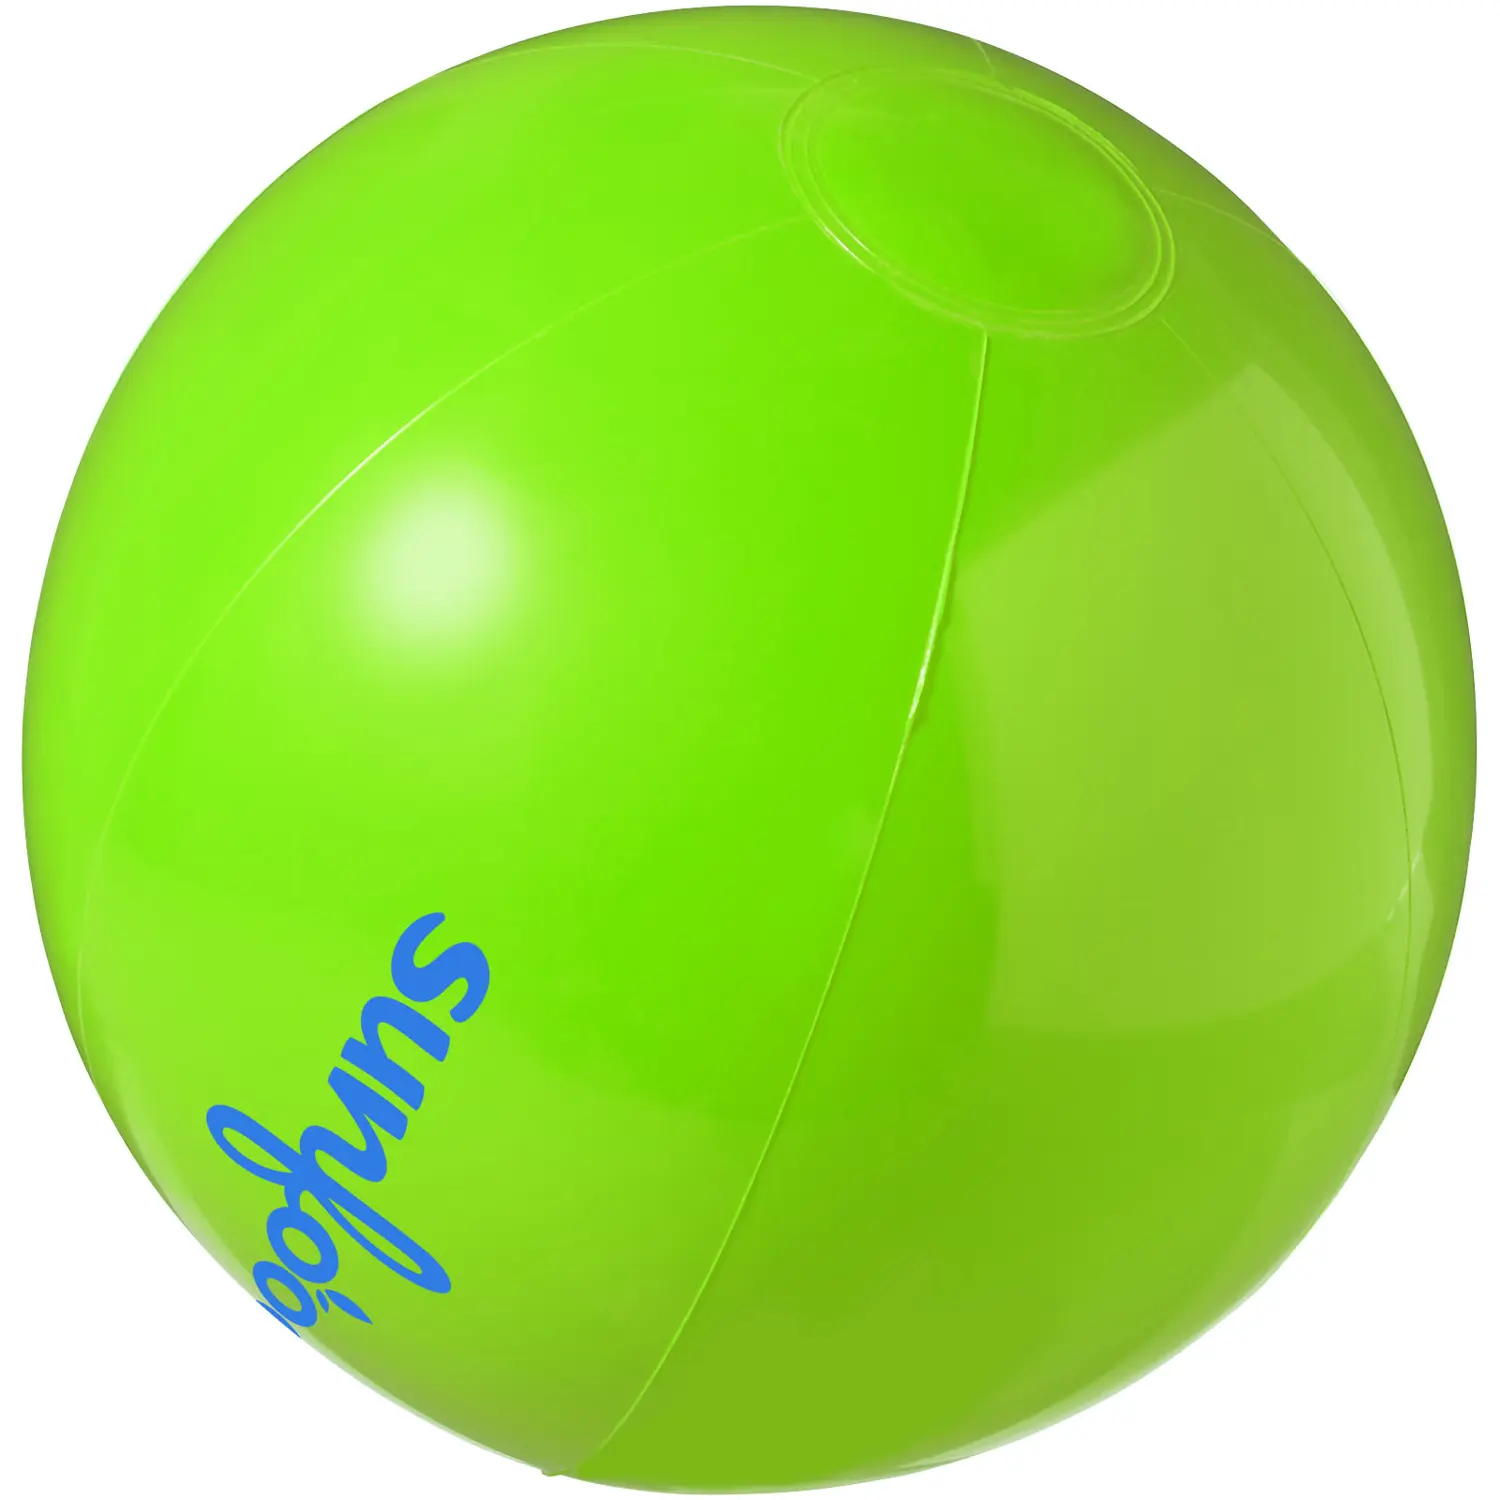 वजन का गोल रंगीन हल्का पारभासी हरा बीच बॉल, अंधेरे में रिमोट ग्लो के साथ लाइट अप बीच बॉल